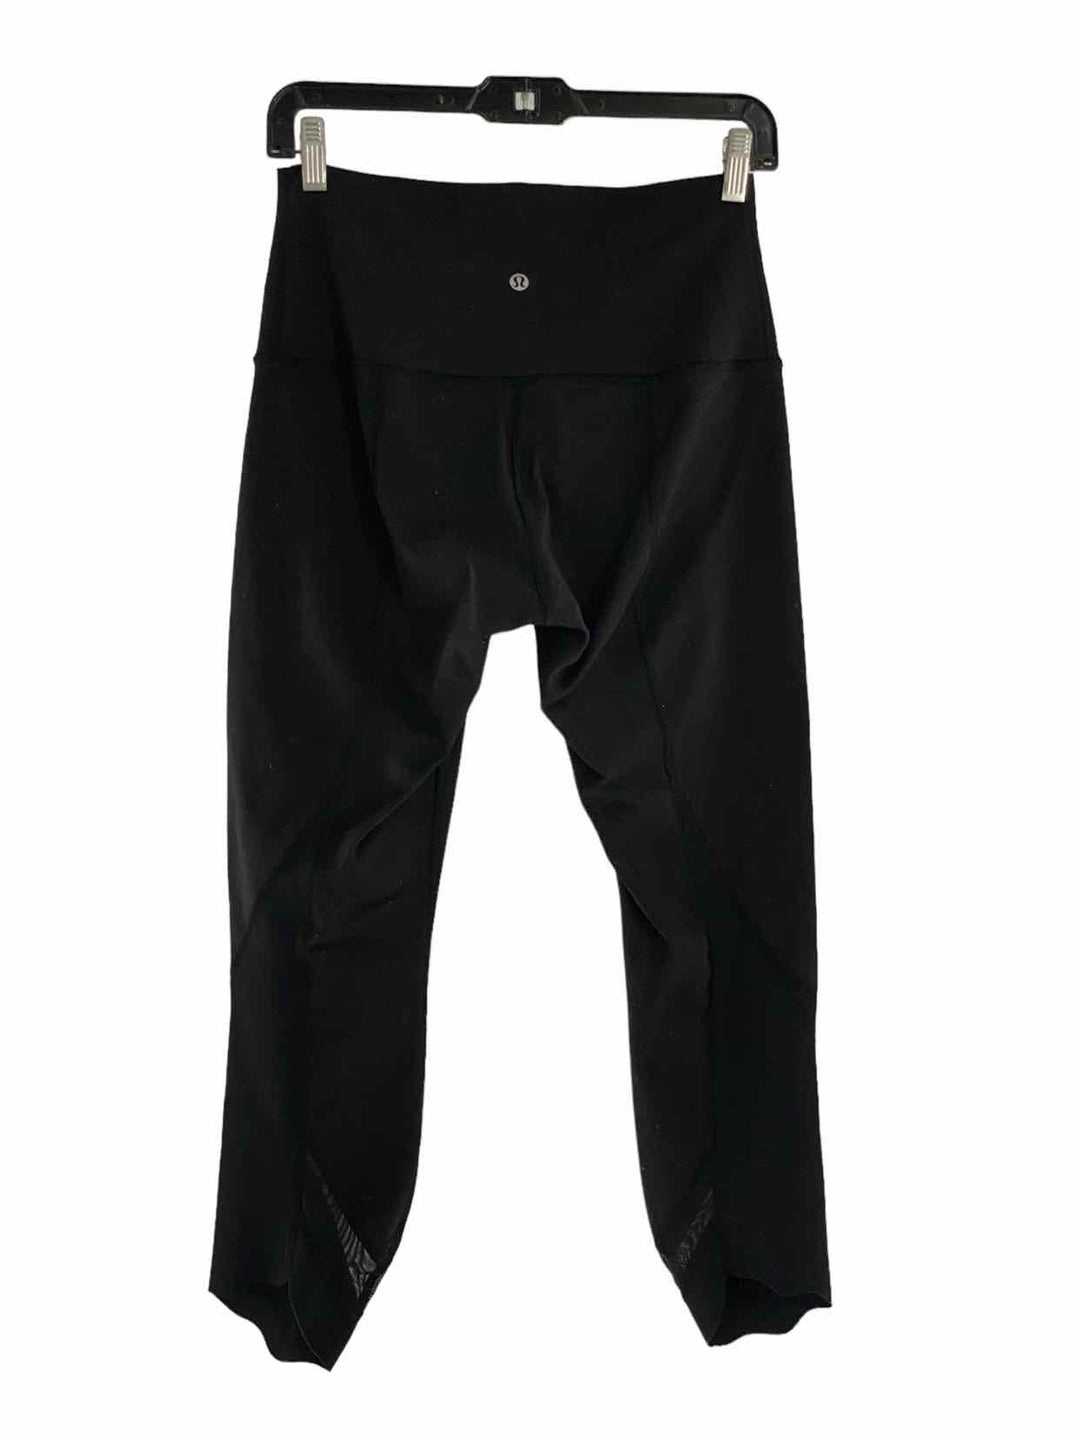 Lululemon Size 6 Black Athletic Pants